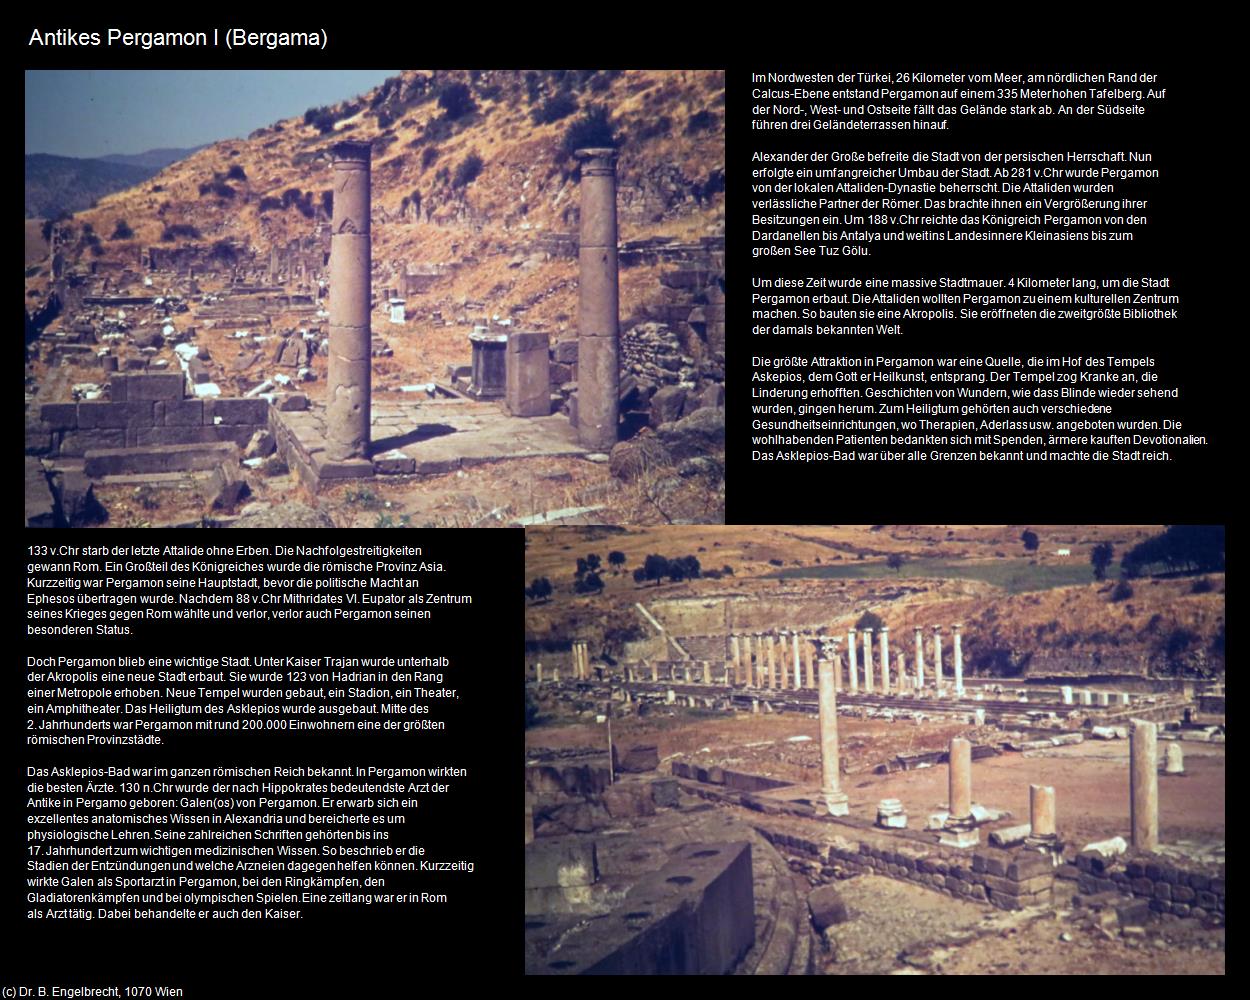 Antikes Pergamon I (Bergama) in TÜRKEI